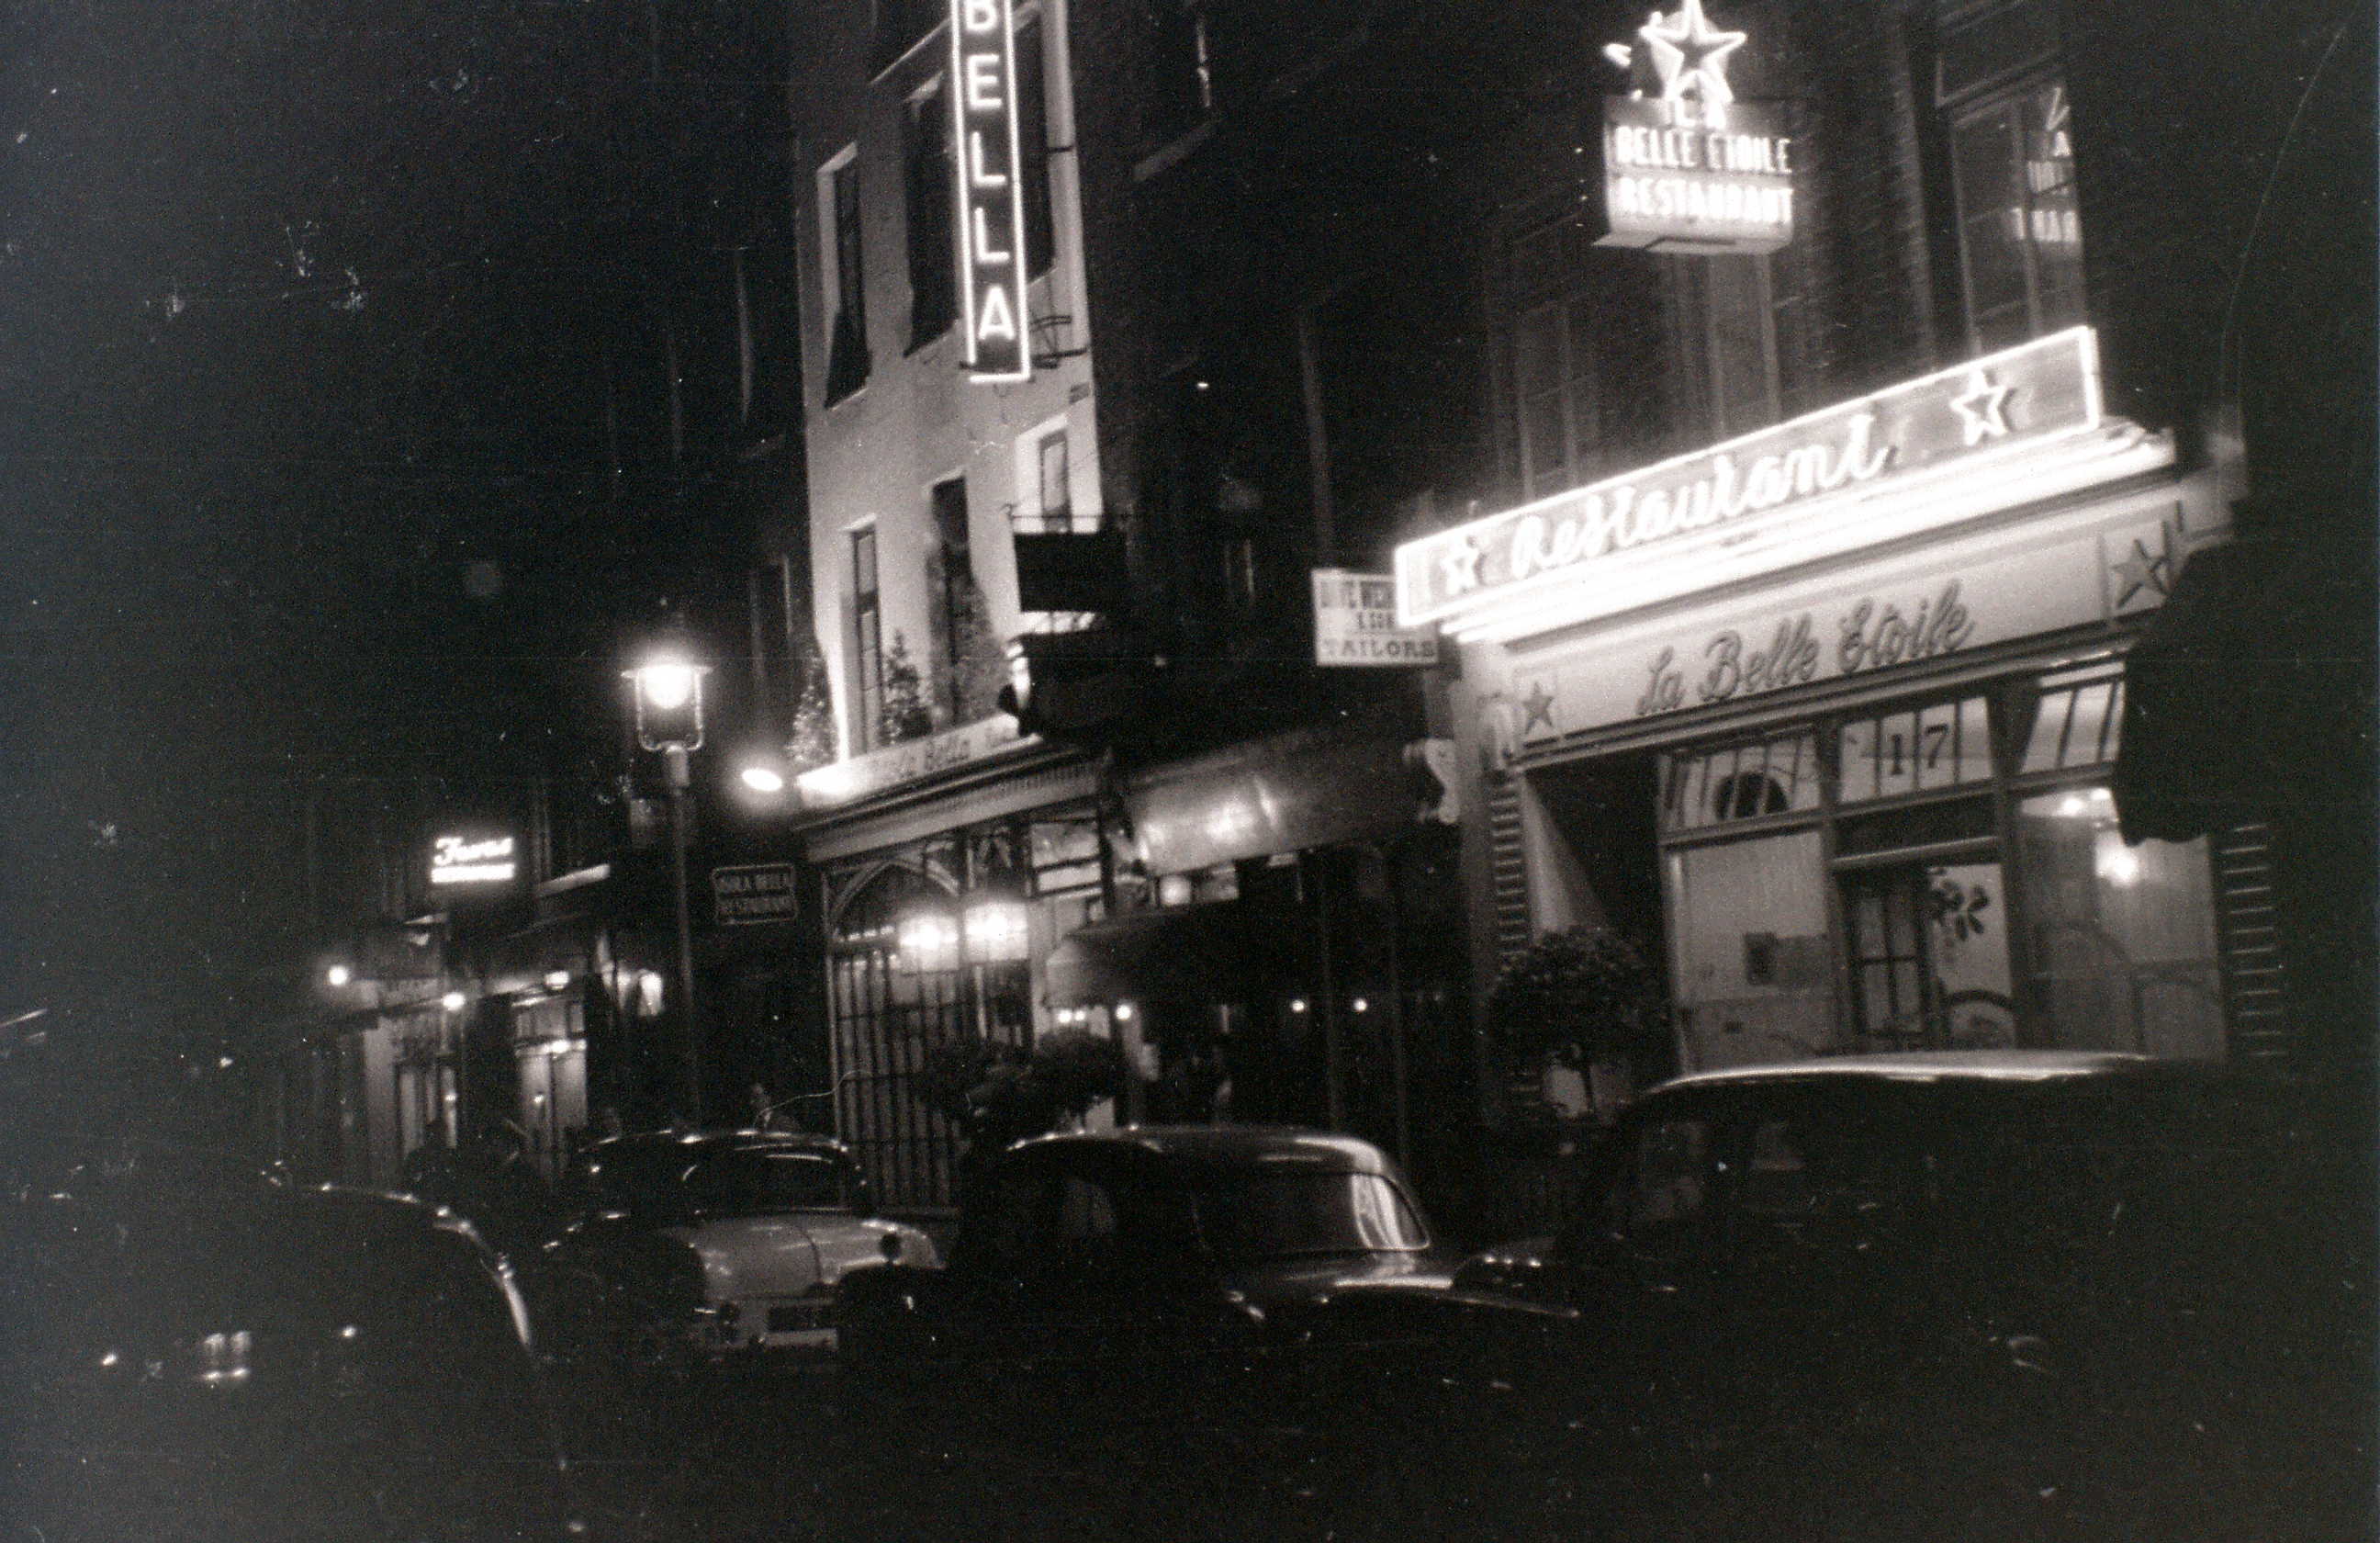 Frith Street, Soho, London, 5 November 1955